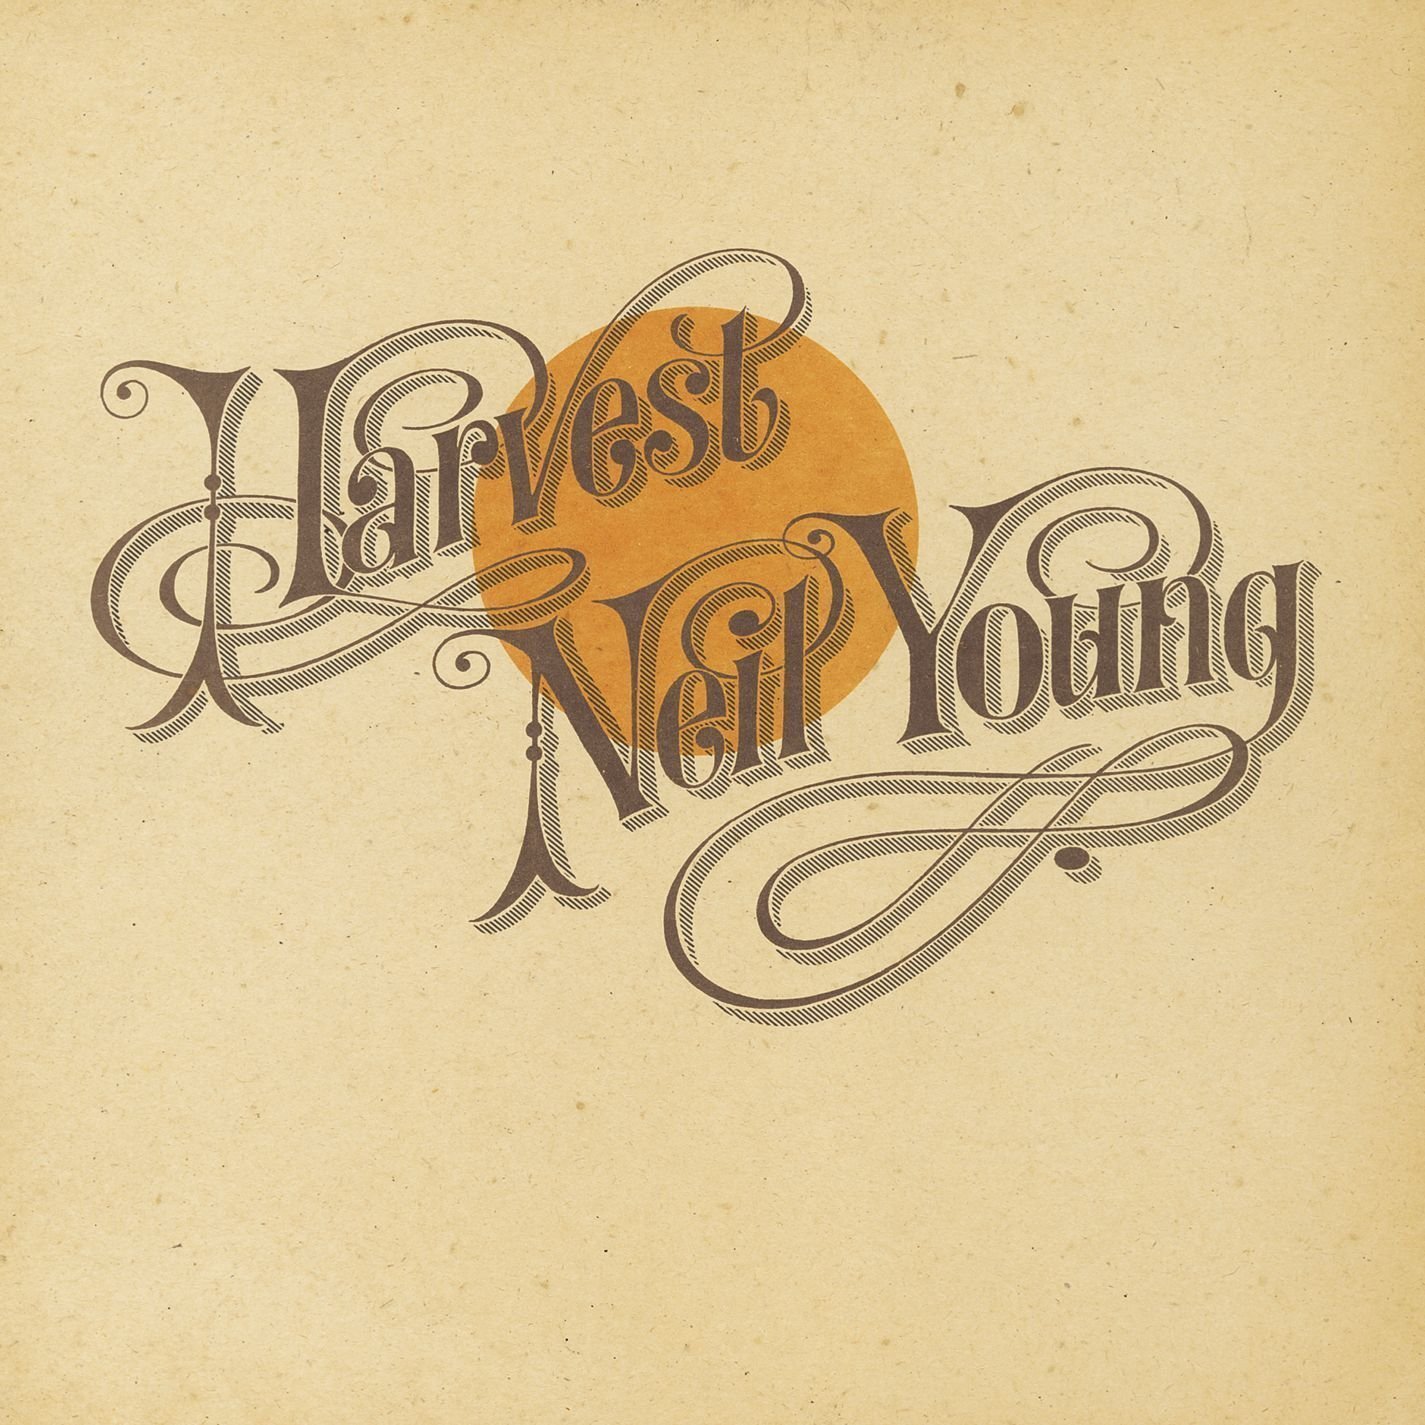 Neil Young - Harvest (LP)